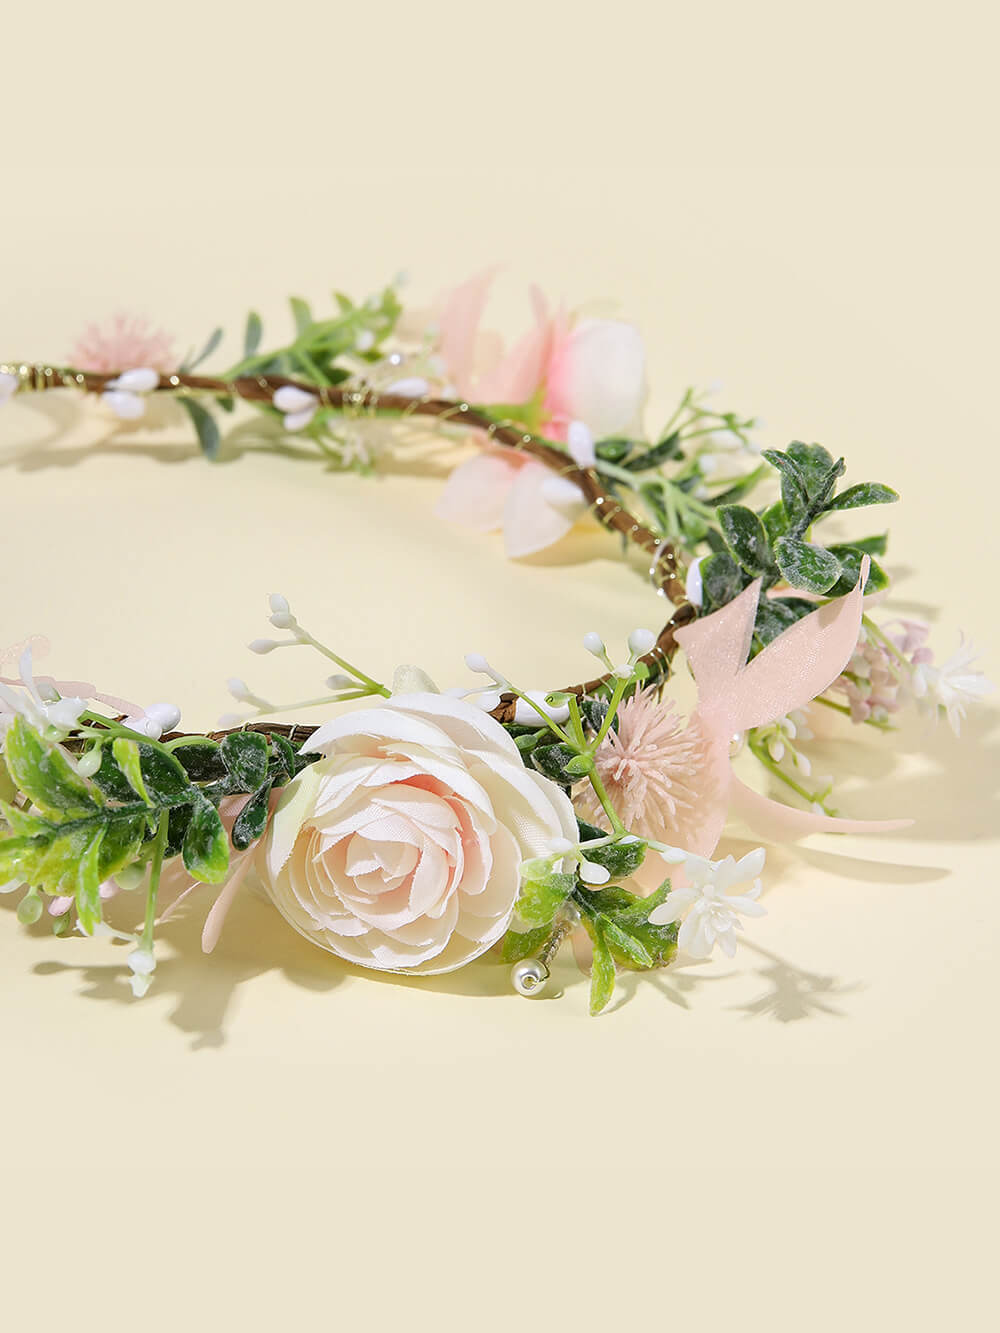 ดอกเบญจมาศสีชมพูดอกรักเร่และดอกกุหลาบสีขาว